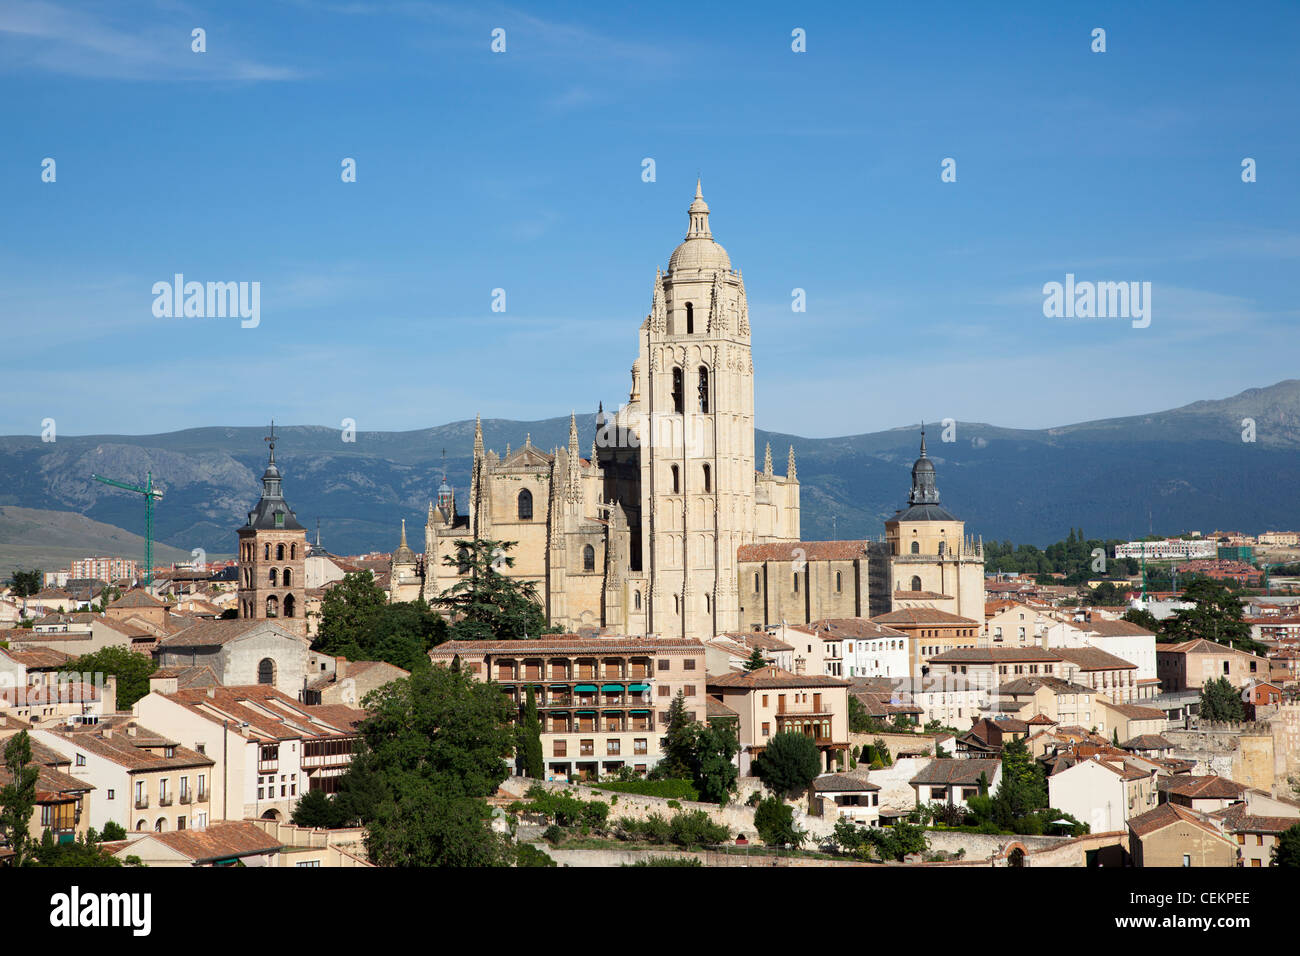 España, Segovia, vista general y la Catedral de Segovia Foto de stock